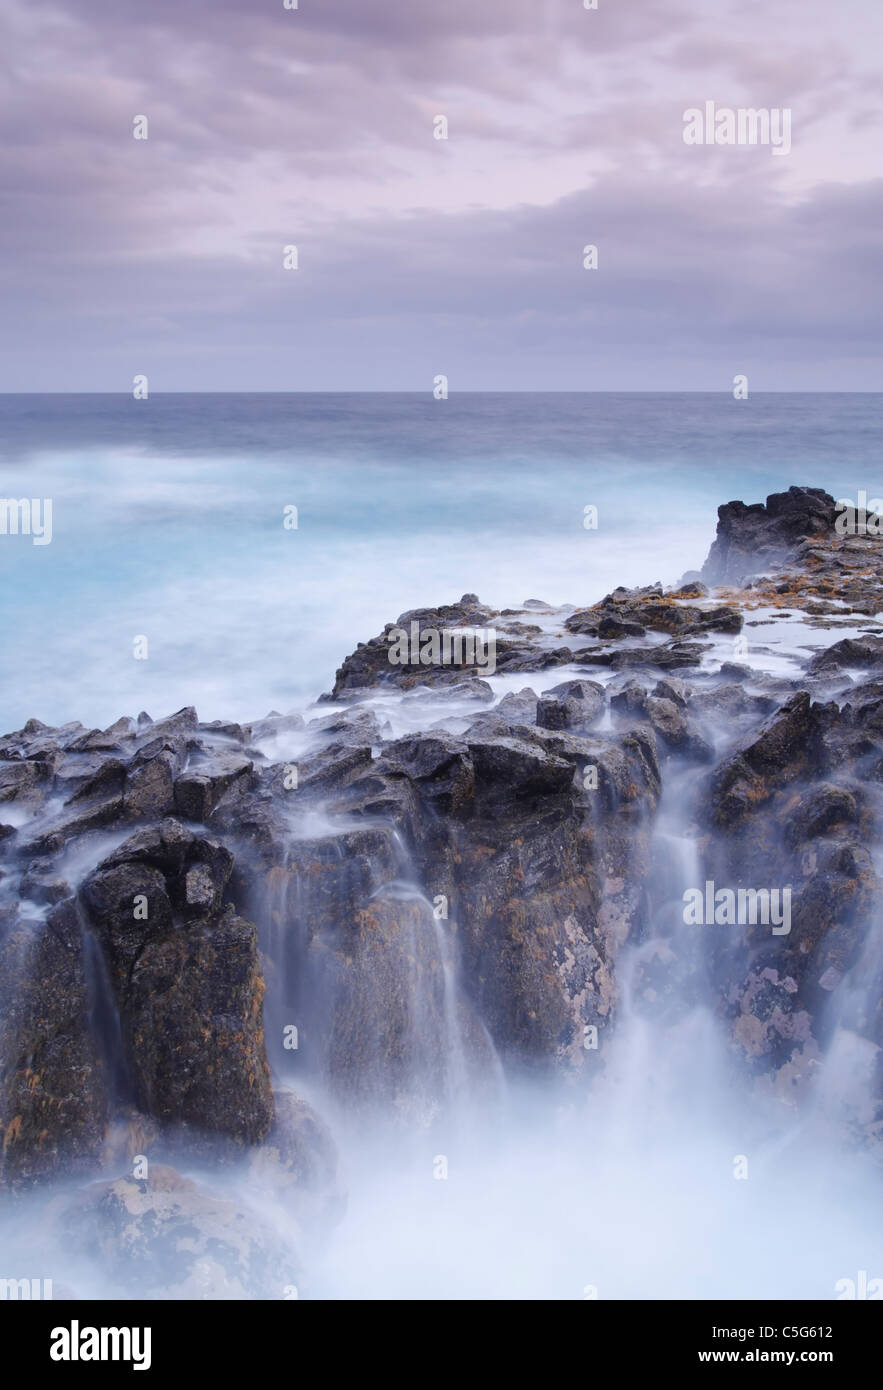 Olas rompiendo sobre las rocas en la costa norte de Gran Canaria Foto de stock